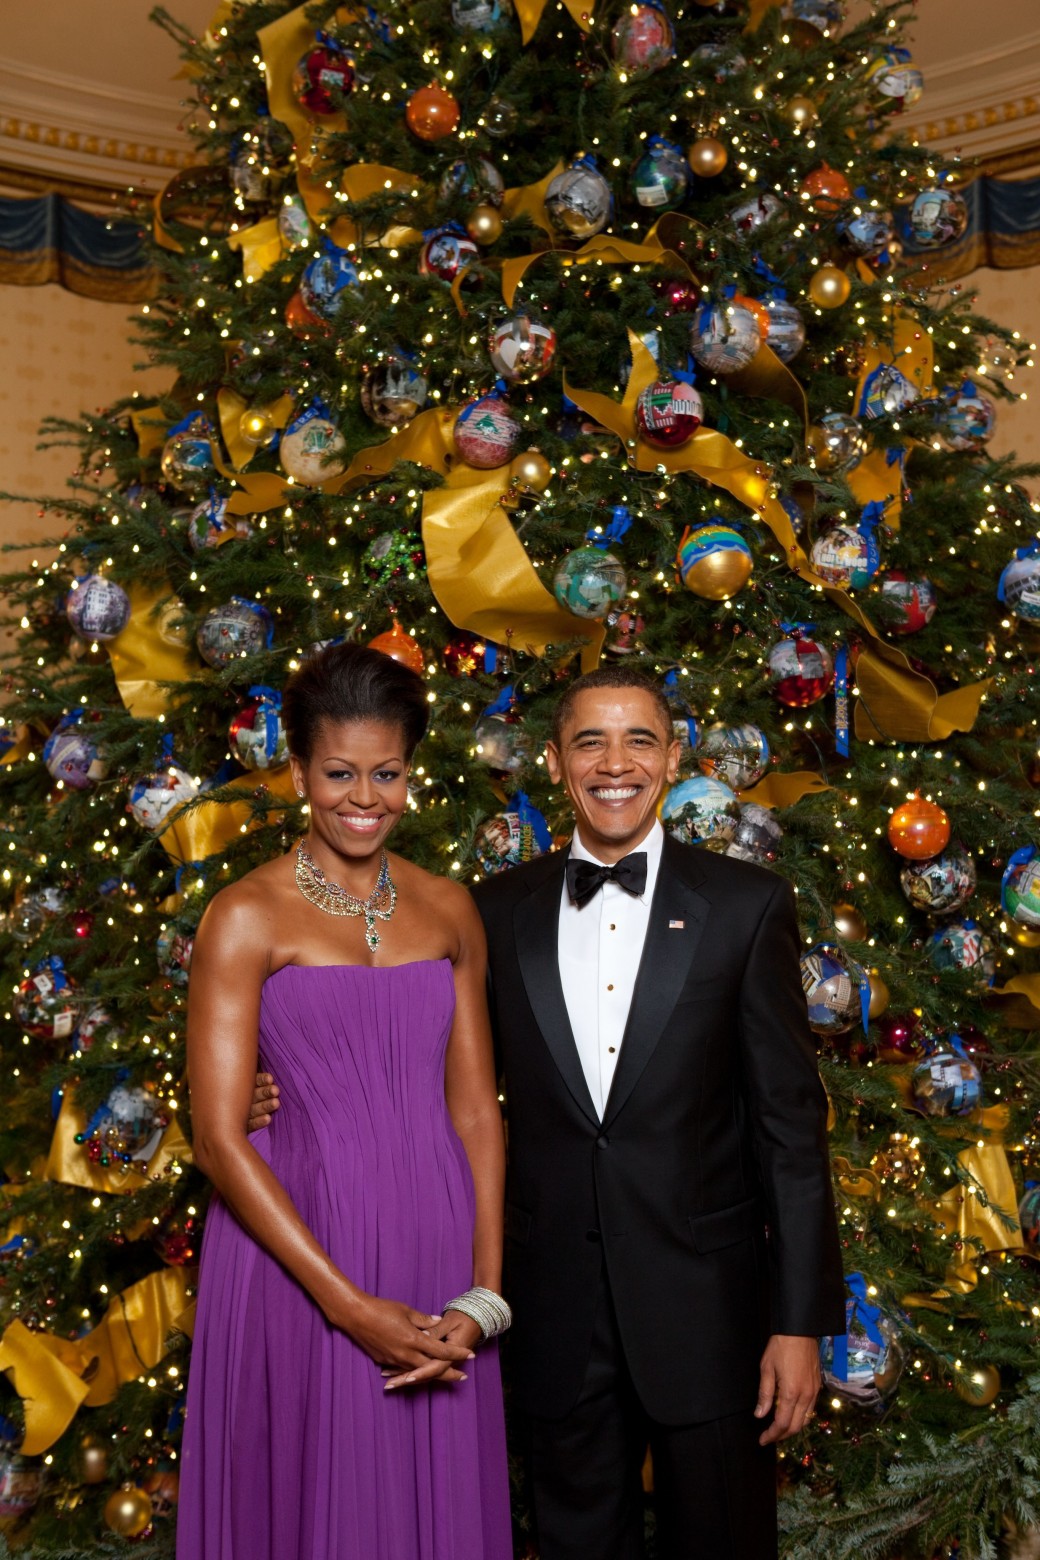 โอบามากับมิเชลถเทศกาลวันหยุดครั้งแรก หน้าต้นคริสต์มาสอย่างเป็นทางการของทำเนียบขาว / Official White House Photo by Pete Souza